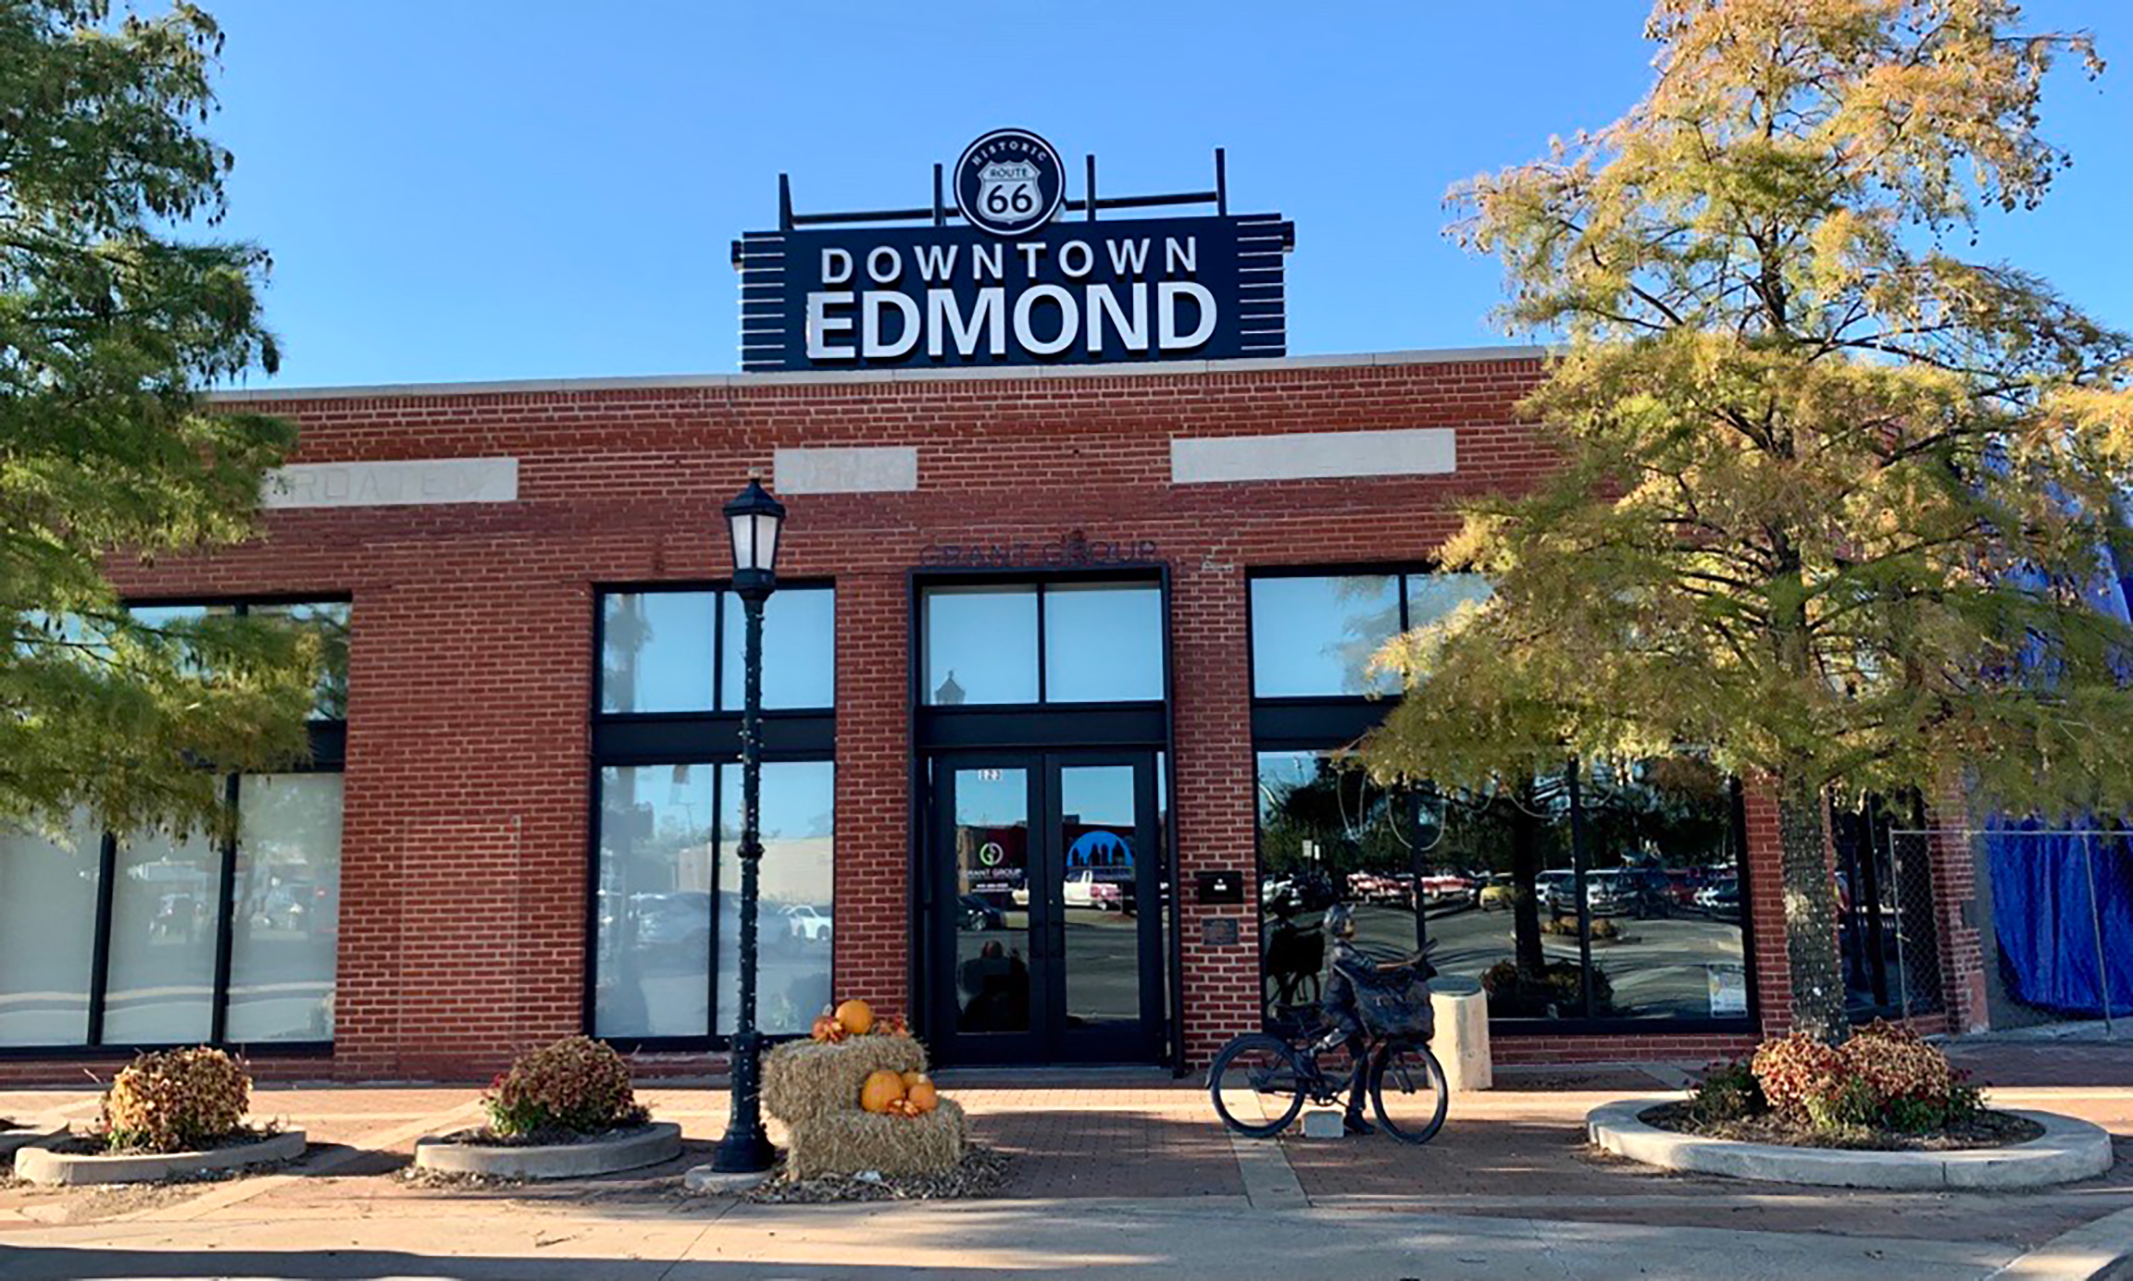 downtown edmond route 66 sign